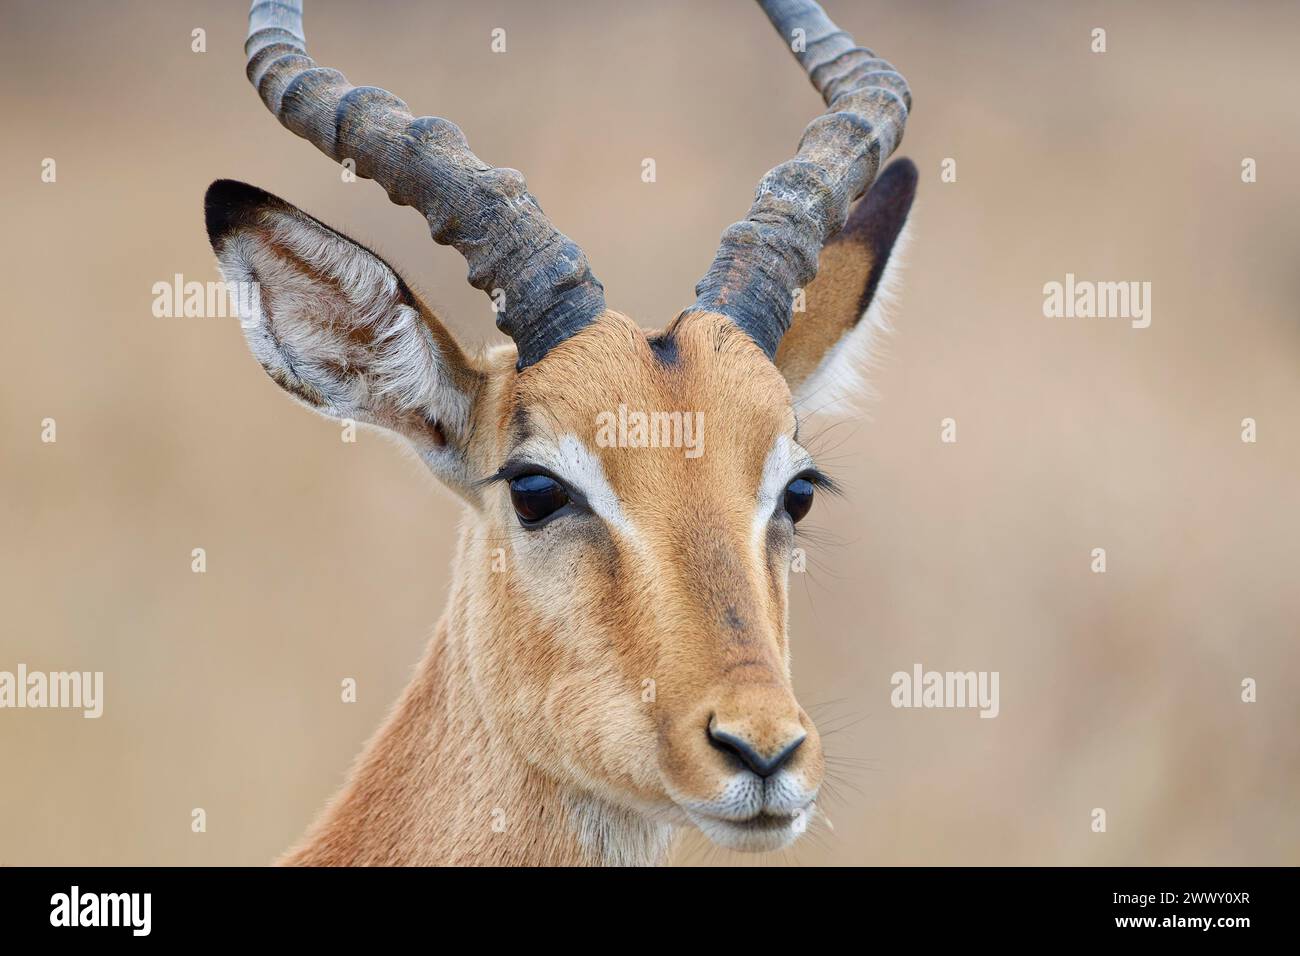 Gemeiner Impala (Aepyceros melampus), männlicher Erwachsener, Nahaufnahme des Kopfes, der Ohren und Hörner, Tierporträt, Kruger-Nationalpark, Südafrika, Afrika Stockfoto